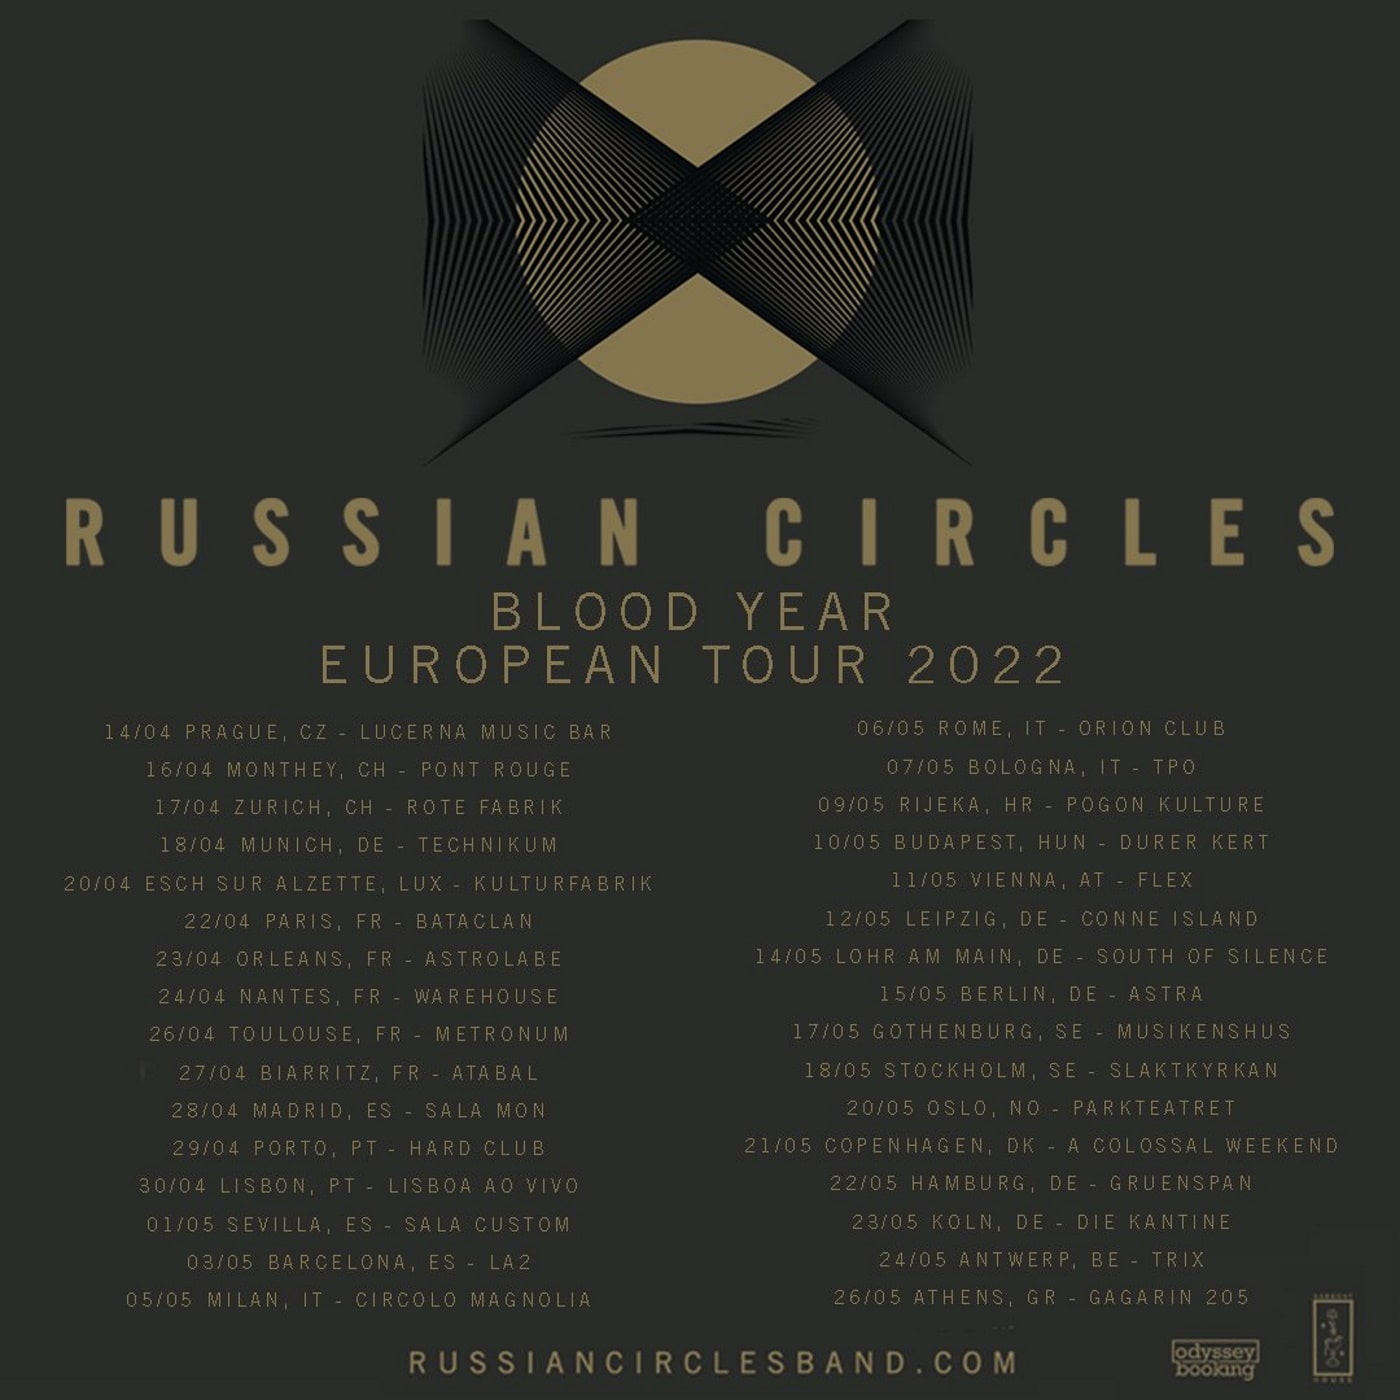 Russian Circles band